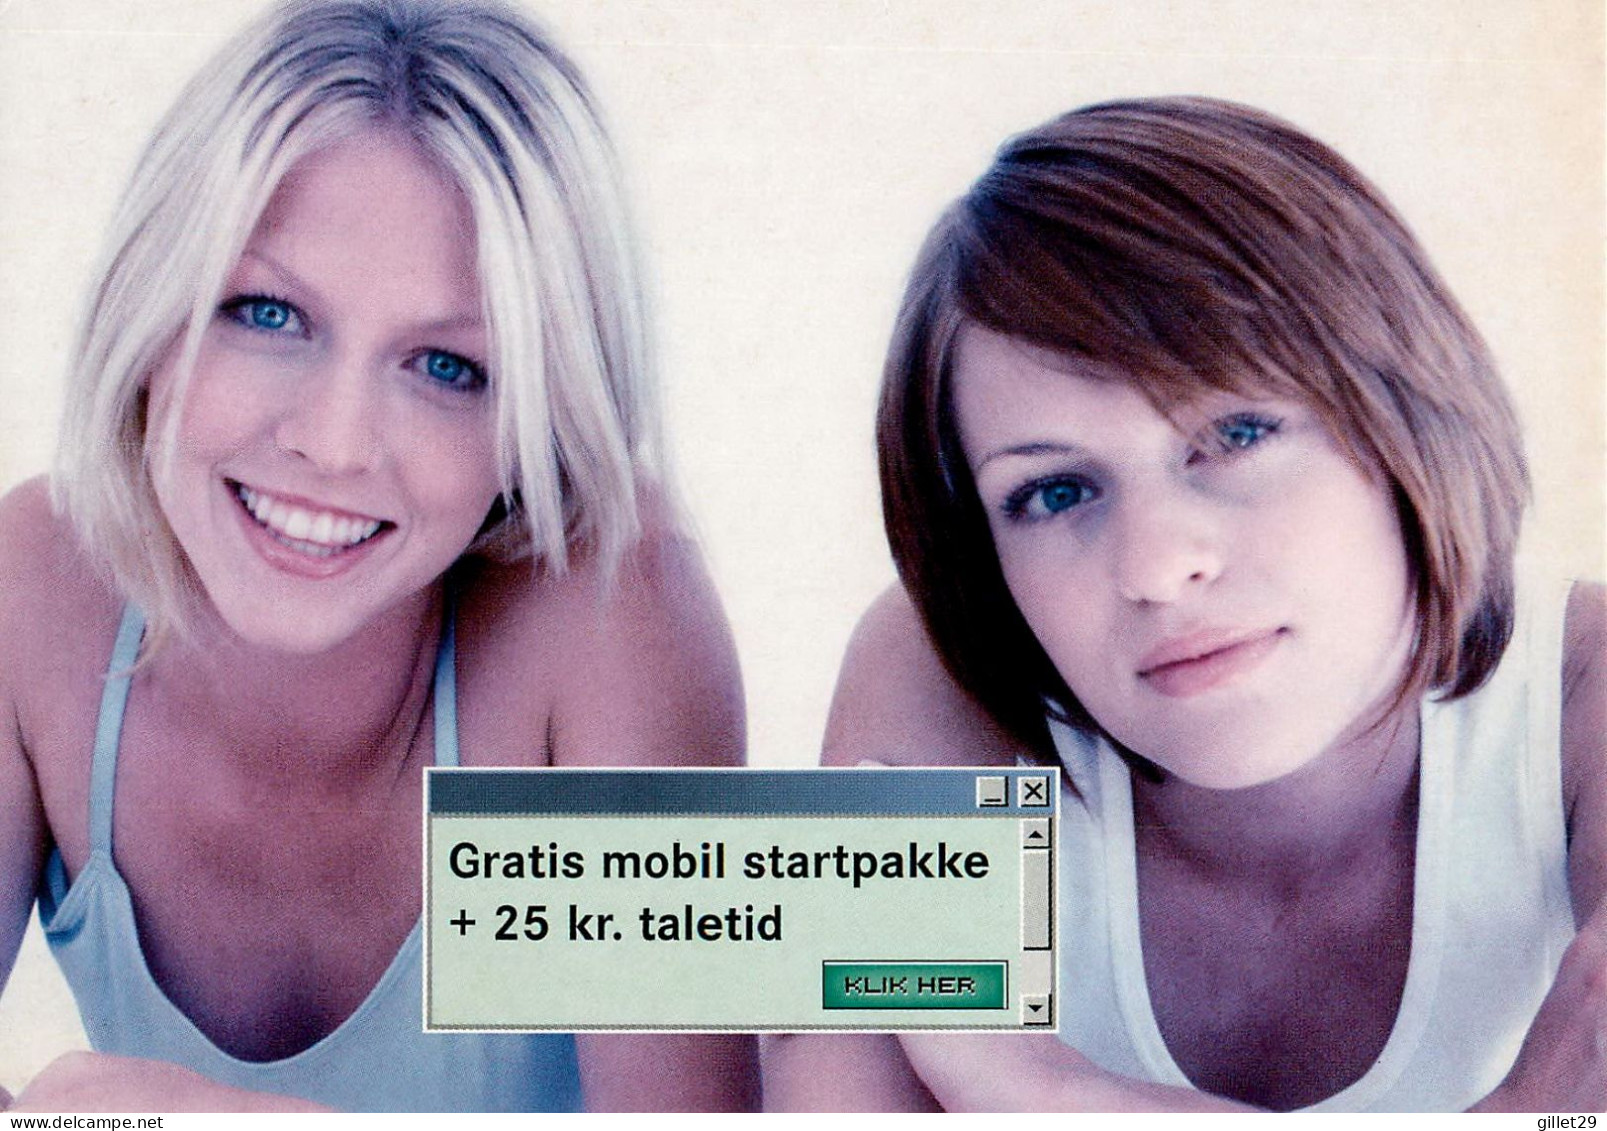 ADVERTISING, PUBLICITÉ - VOULEZ-VOUS UN FORFAIT DE DÉMARRAGE MOBILE GRATUIT - GO-CARD 2003 No 6907 - - Advertising